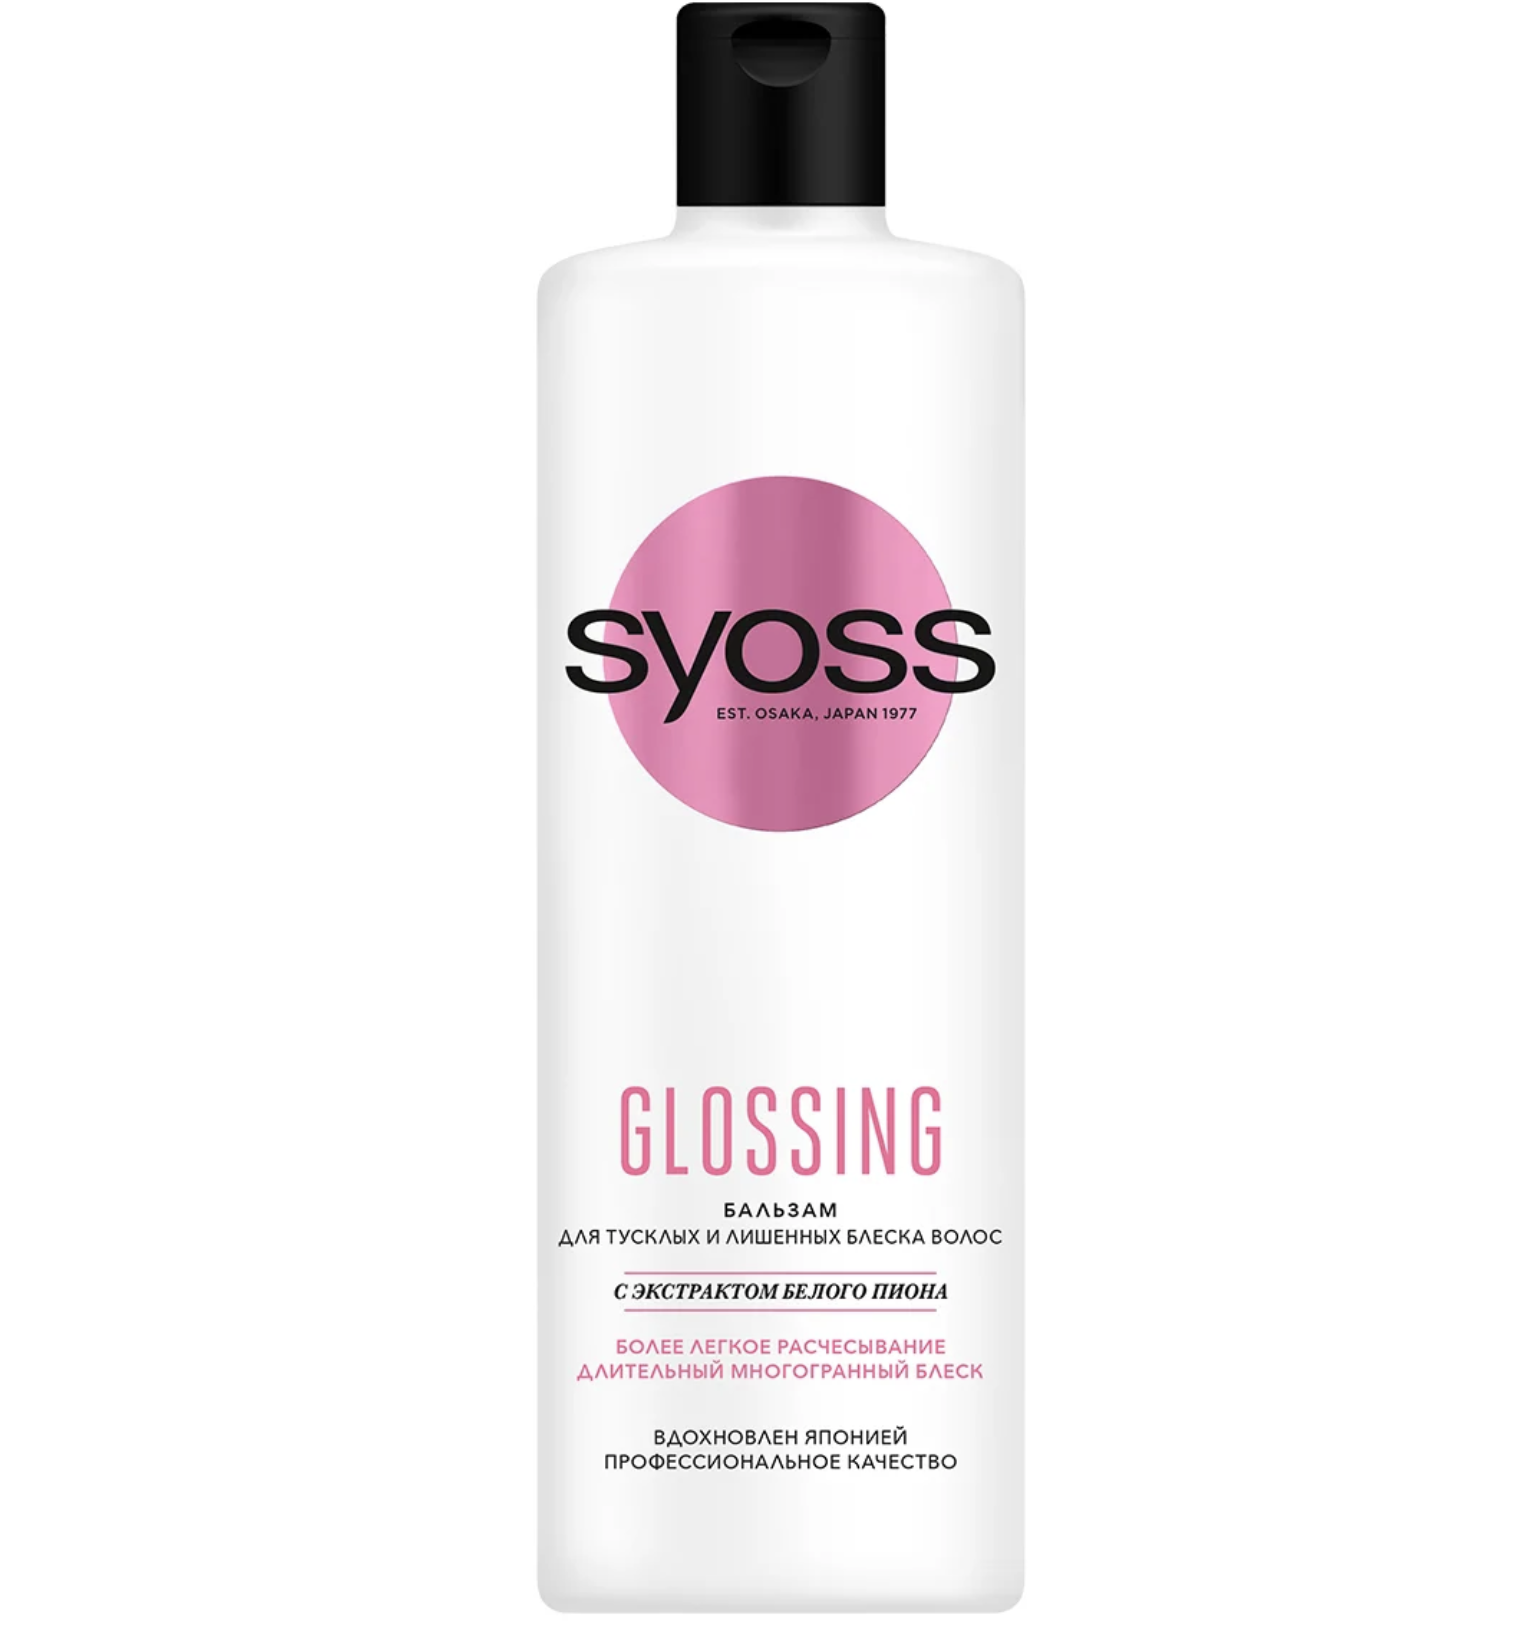 картинка Сьосс / Syoss Glossing - Бальзам для тусклых и лишенных блеска волос экстракт белого пиона 450 мл